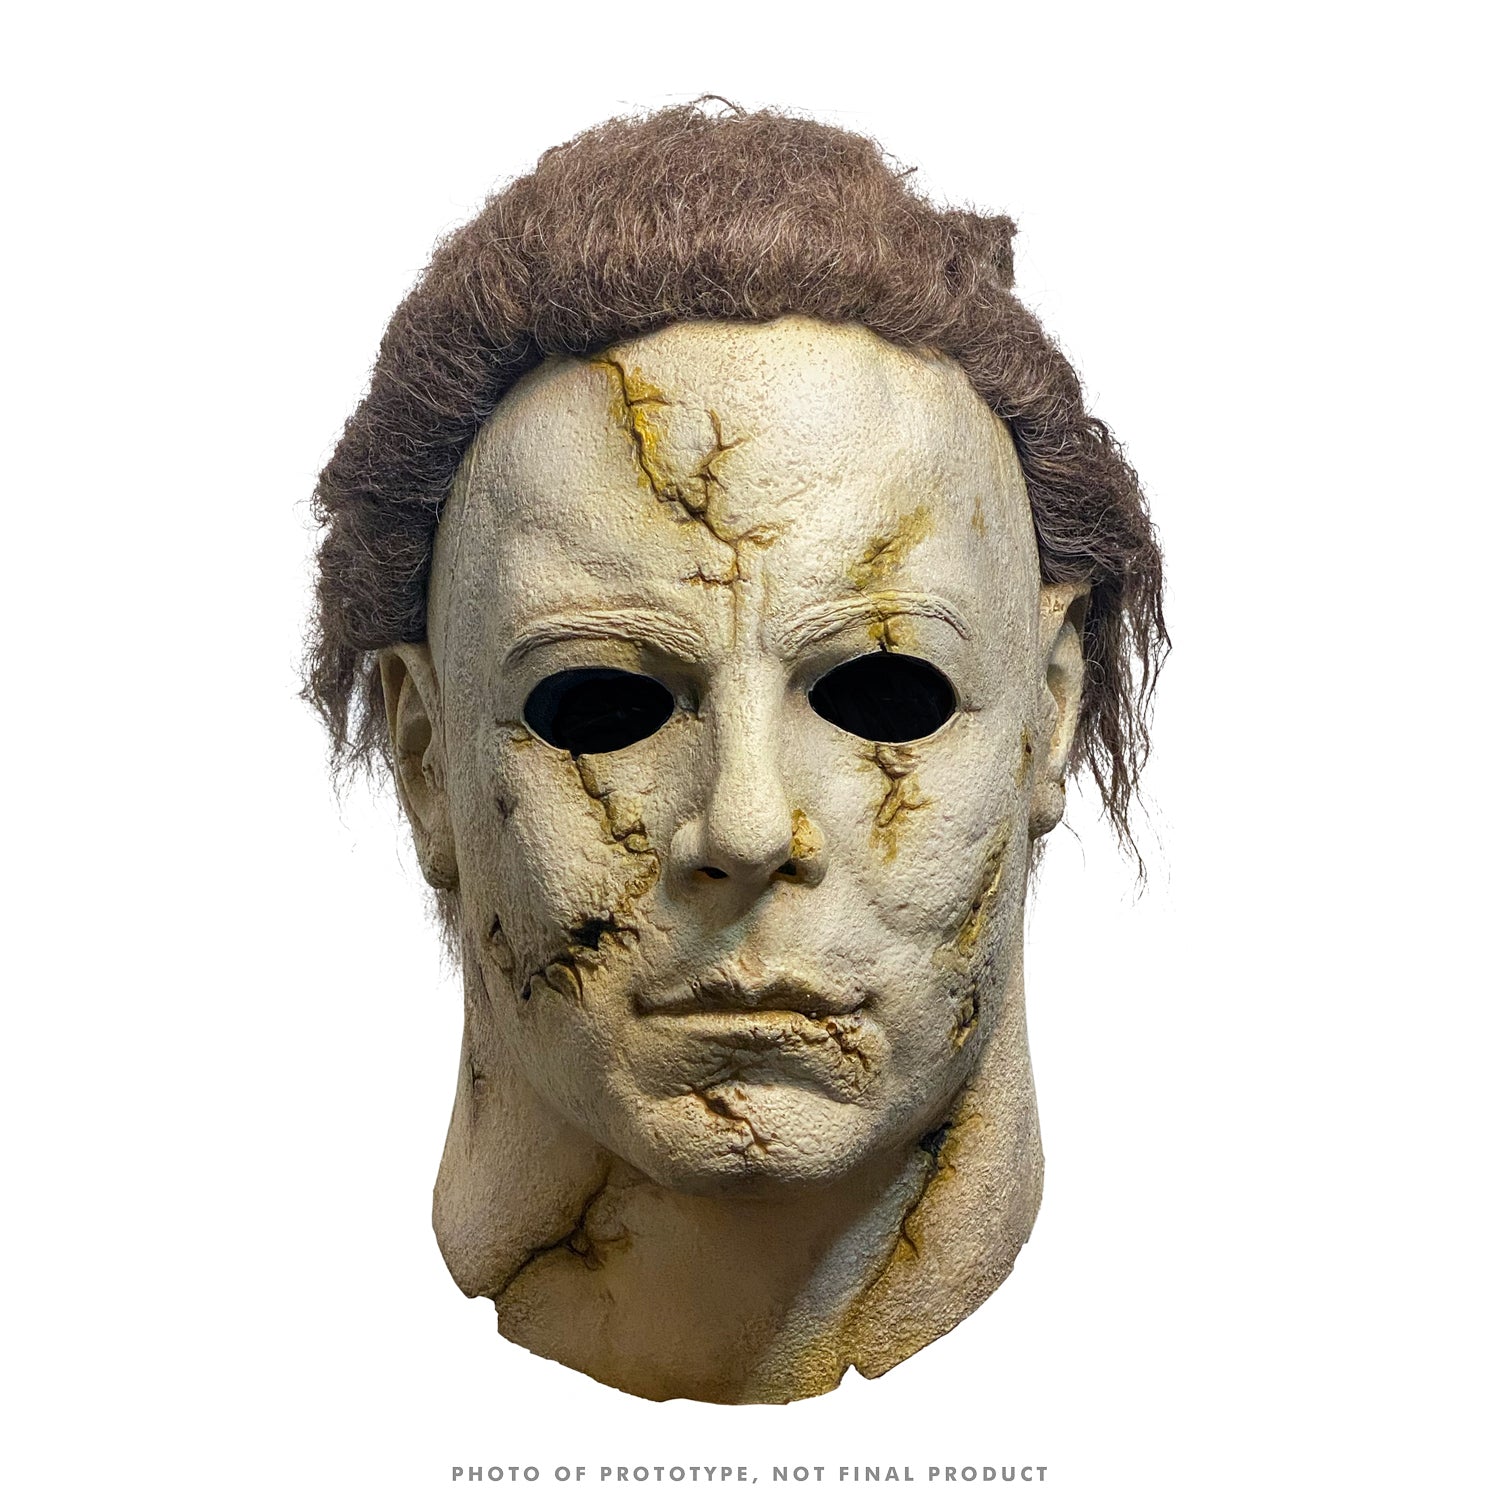 Halloween (2007) - Michael Myers Mask